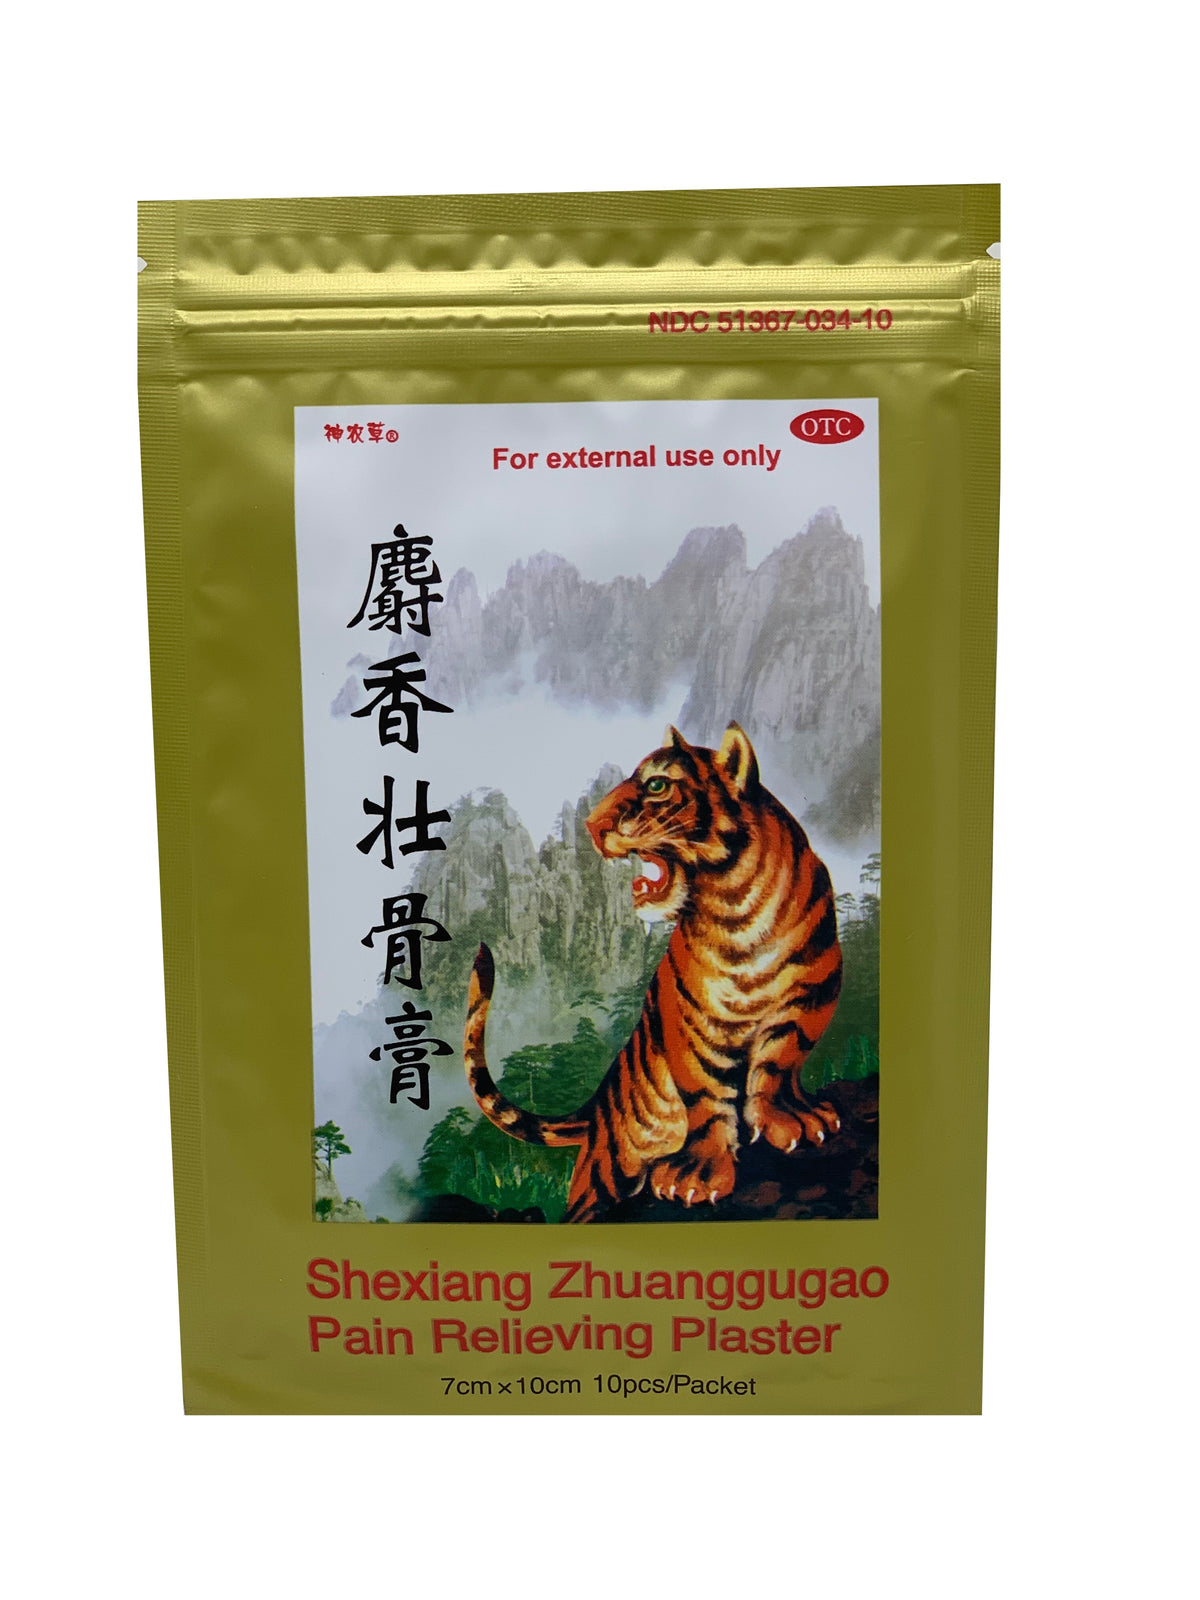 Shexiang Zhuanggugao Pain Relieving Plaster (Packet)